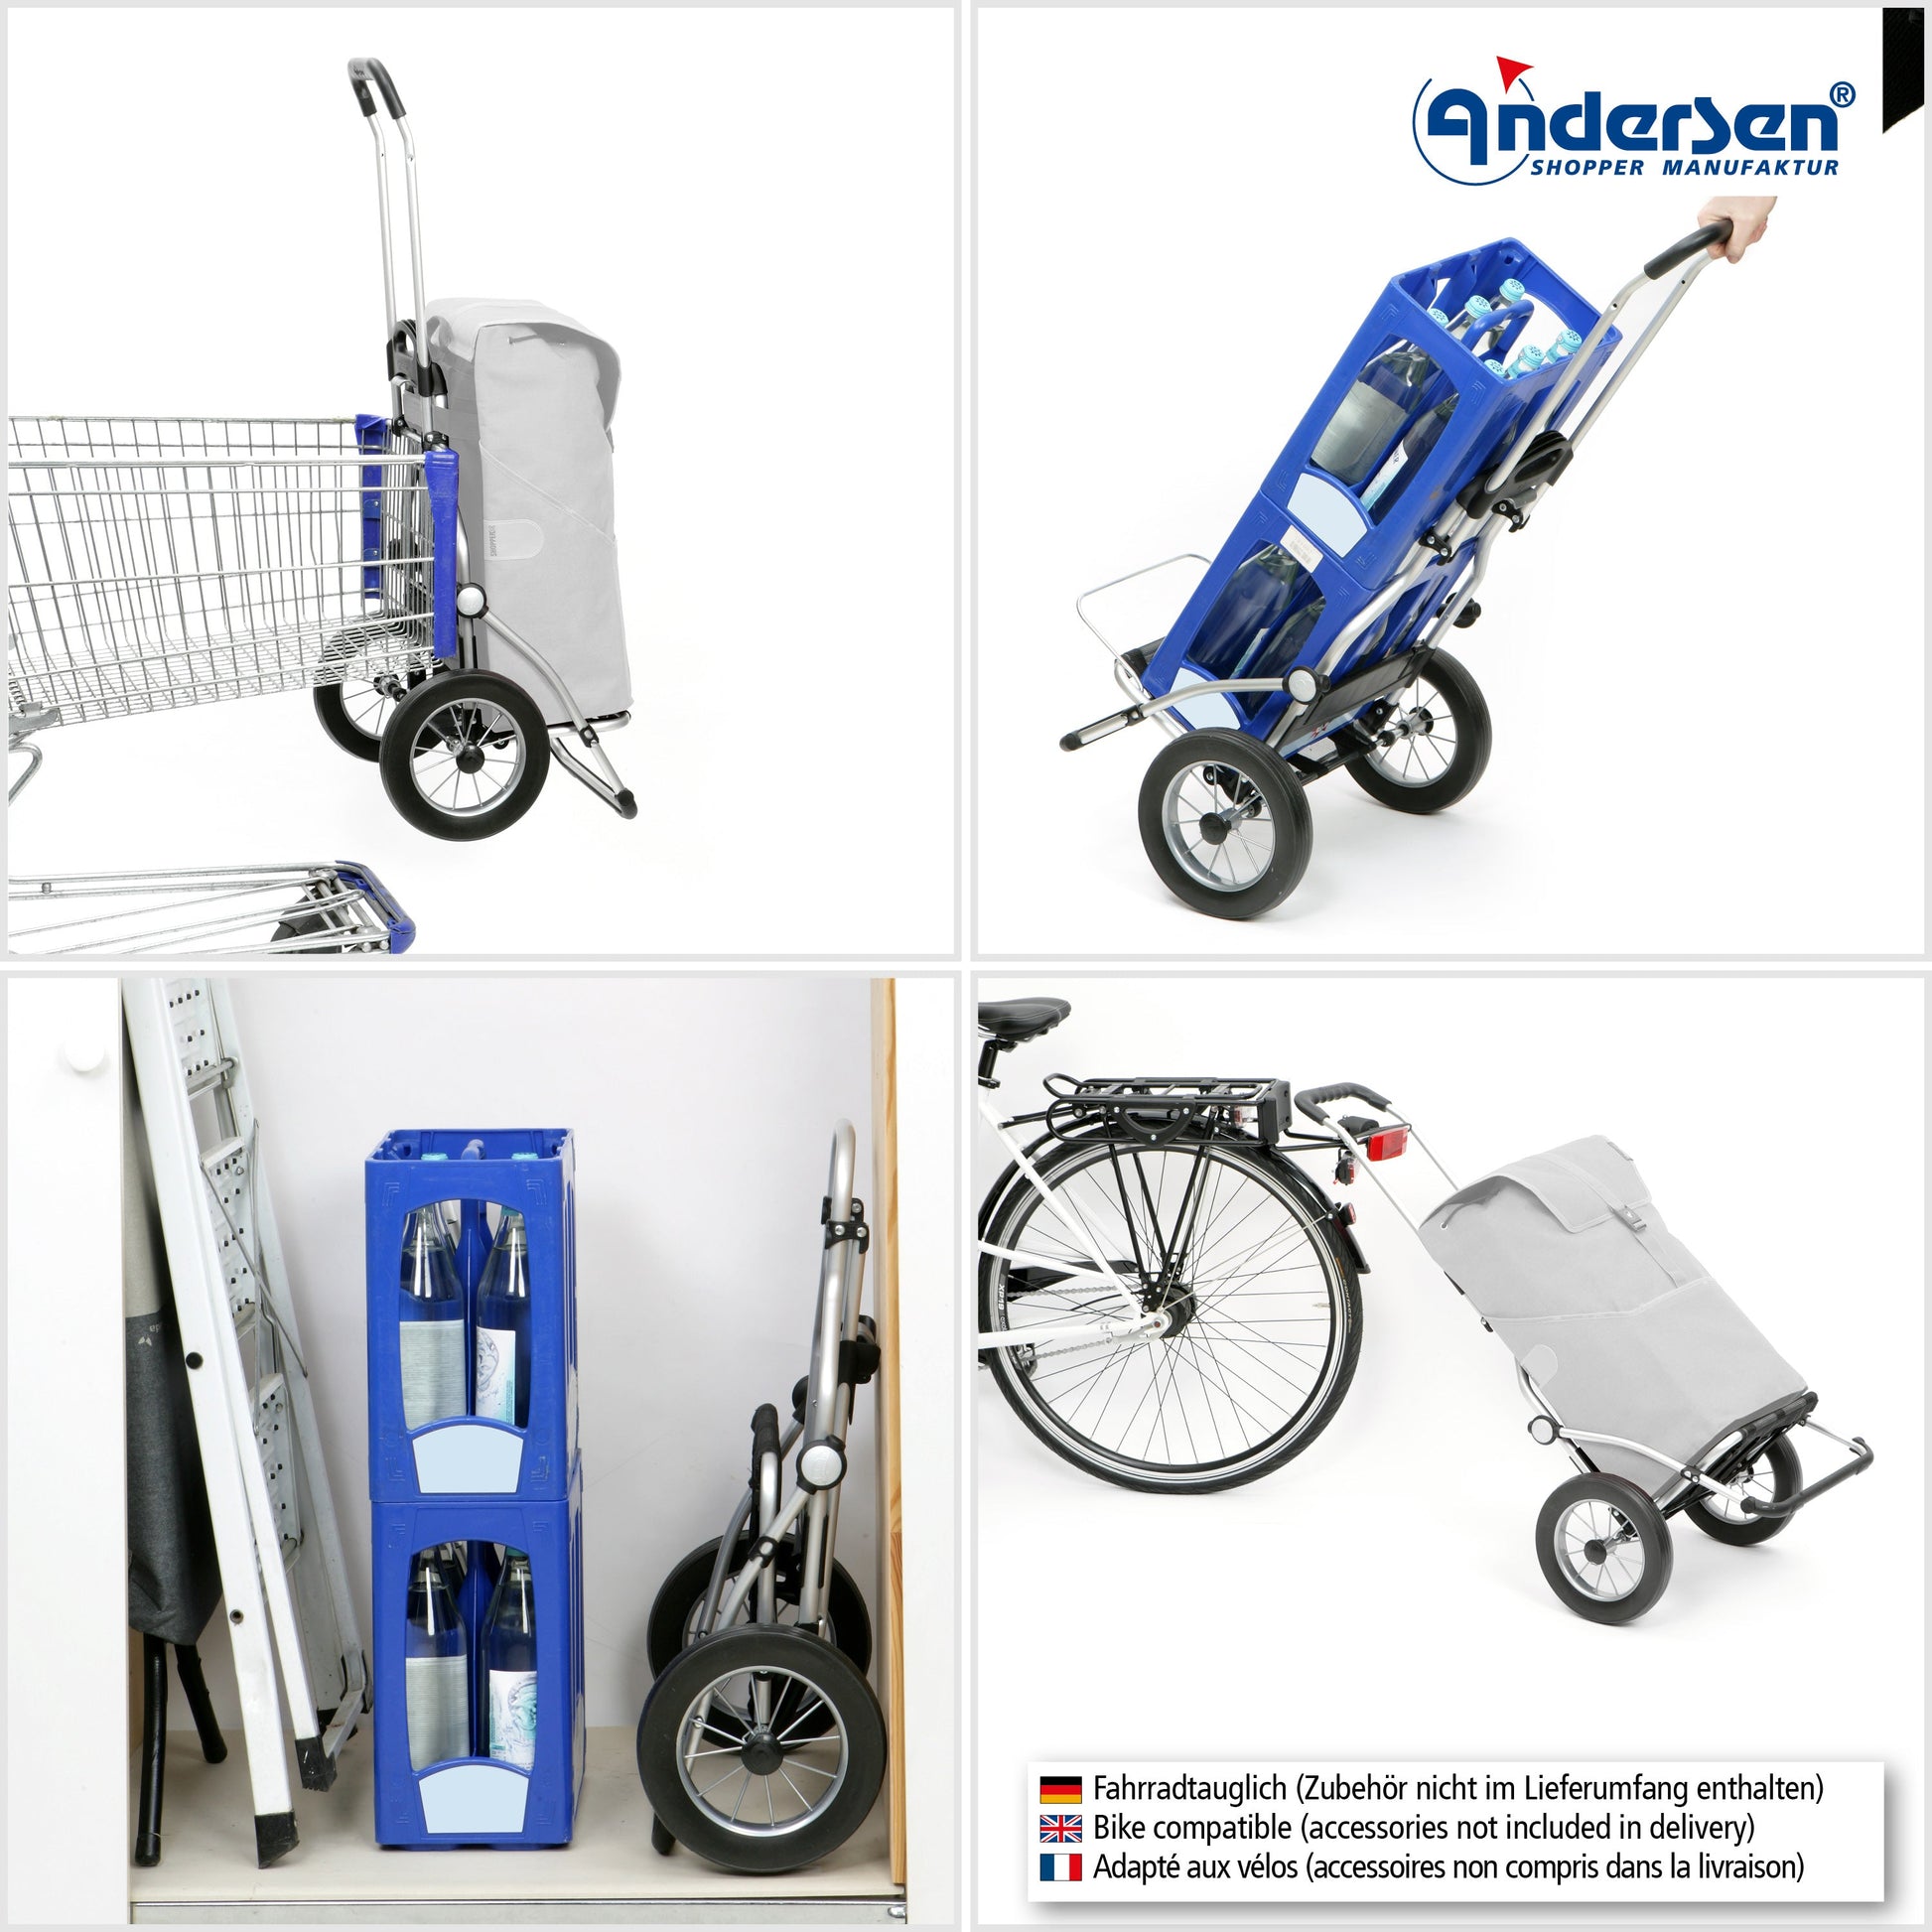 Andersen Shopper Manufaktur-Royal Shopper (Metallspeichenrad 25 cm) Reik blau-www.shopping-trolley.ch-bild4